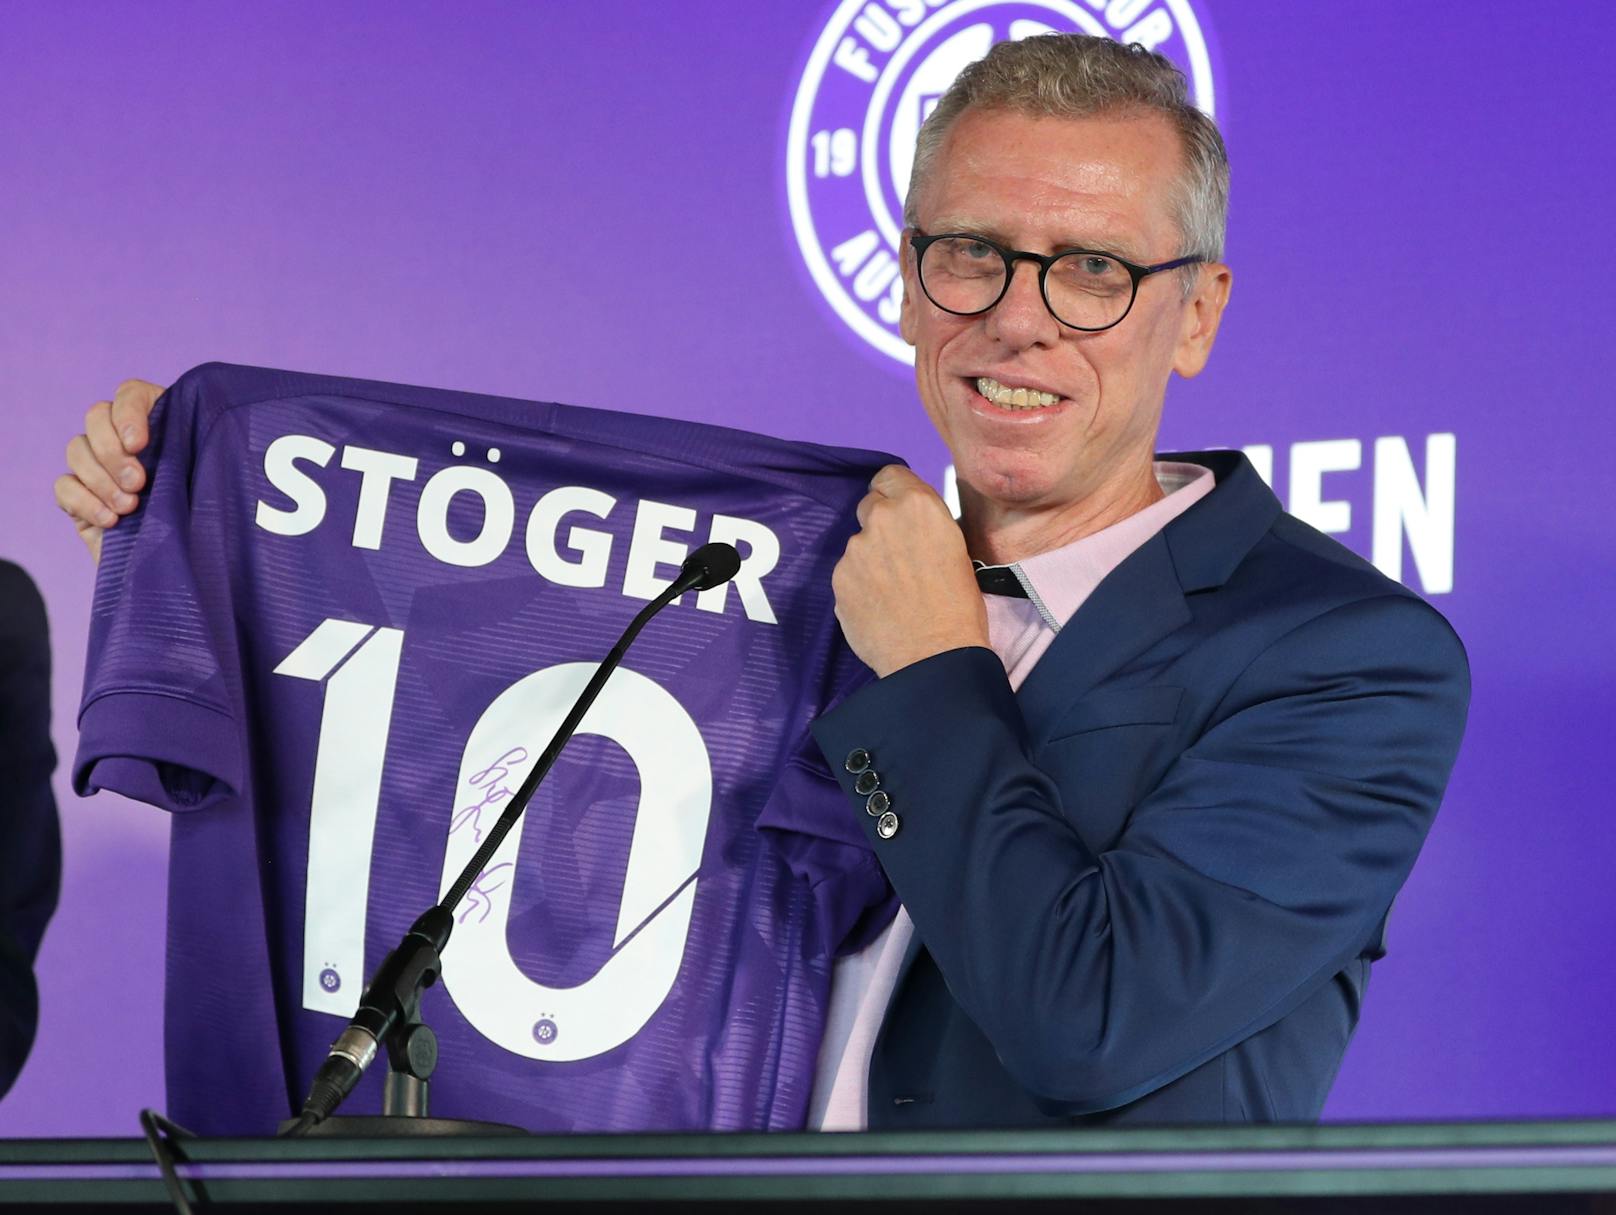 Am 23. Juli 2019 dann der Paukenschlag: Stöger kehrte zur Austria zurück – und zwar als Sportvorstand.